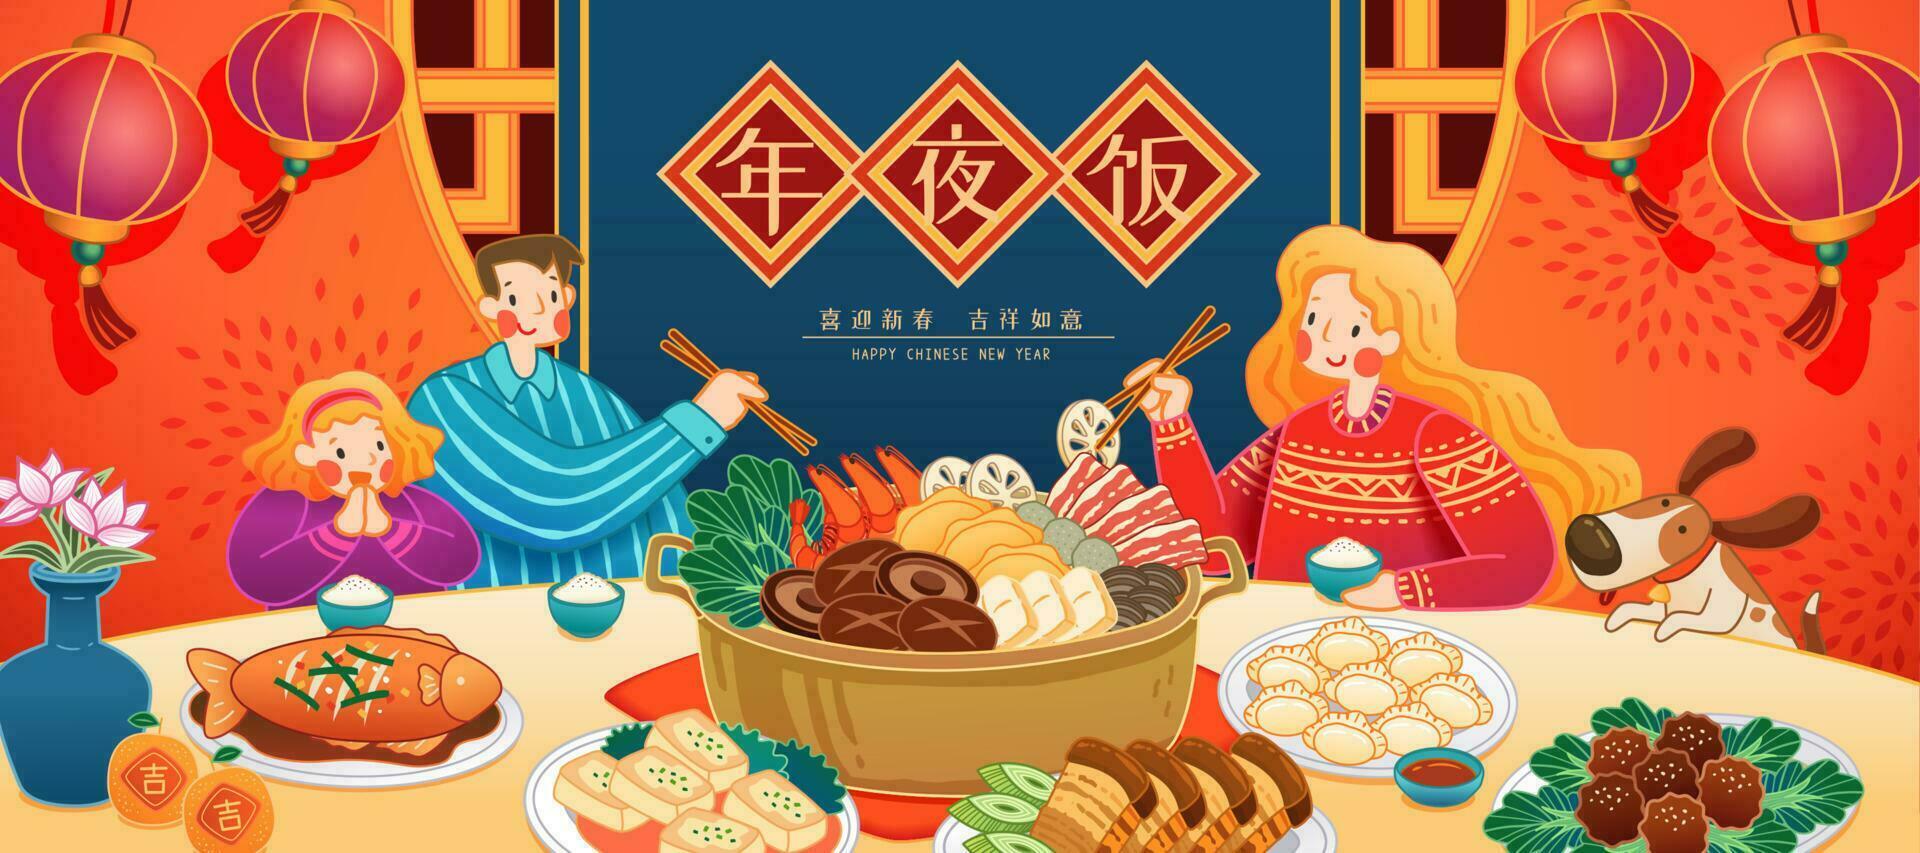 Cinese nuovo anno famiglia riunione cena illustrazione con delizioso piatti e il sfondo con lanterne nel carino disegno, traduzione, riunione cena, contento nuovo anno vettore